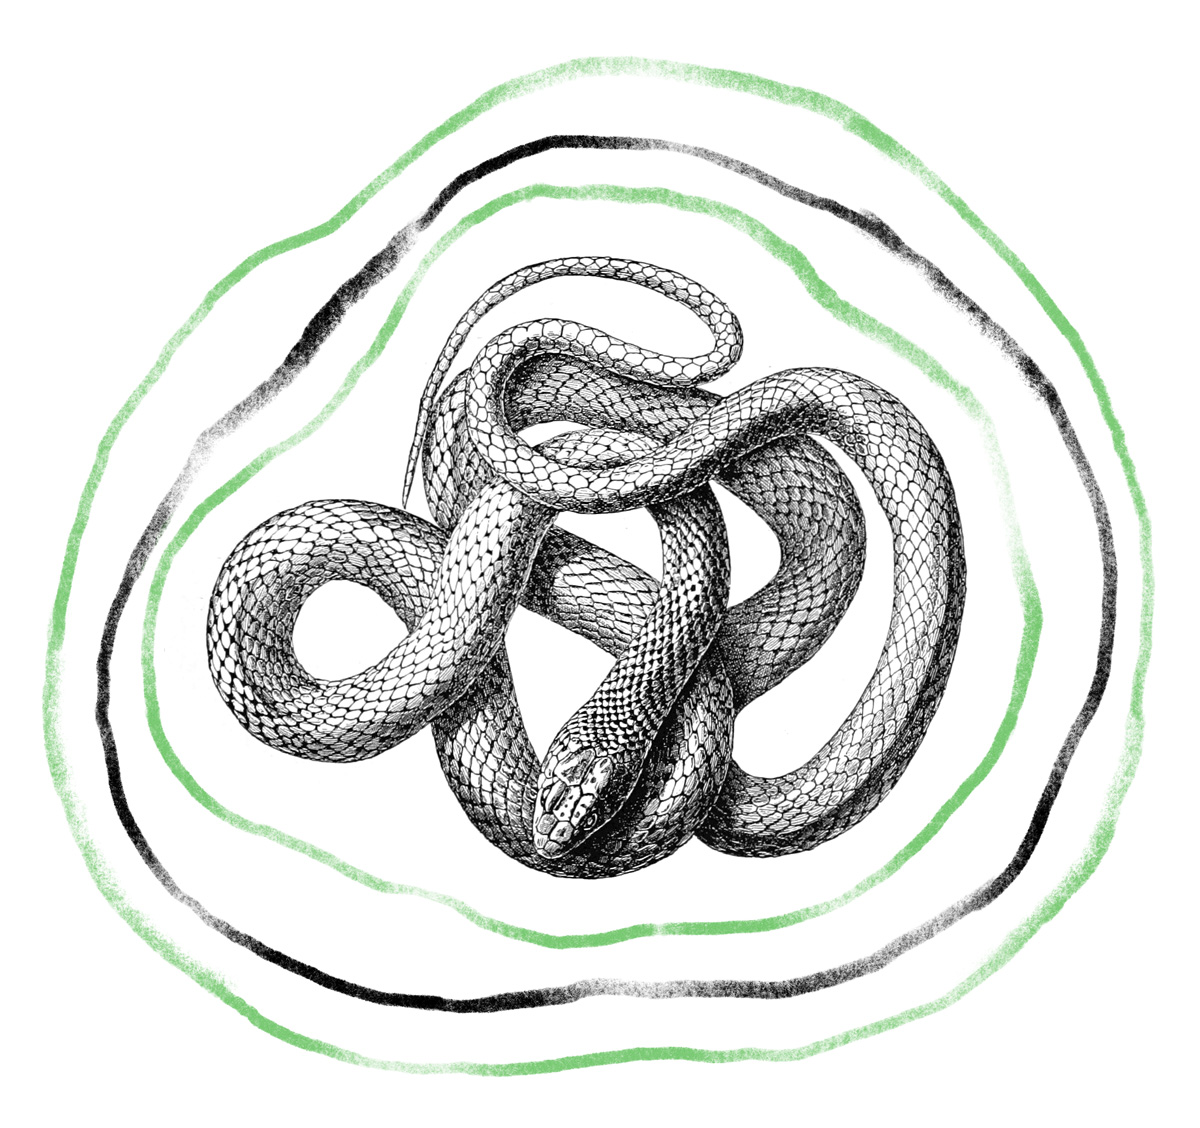 Schwarz-weiß-Illustration einer Schlange